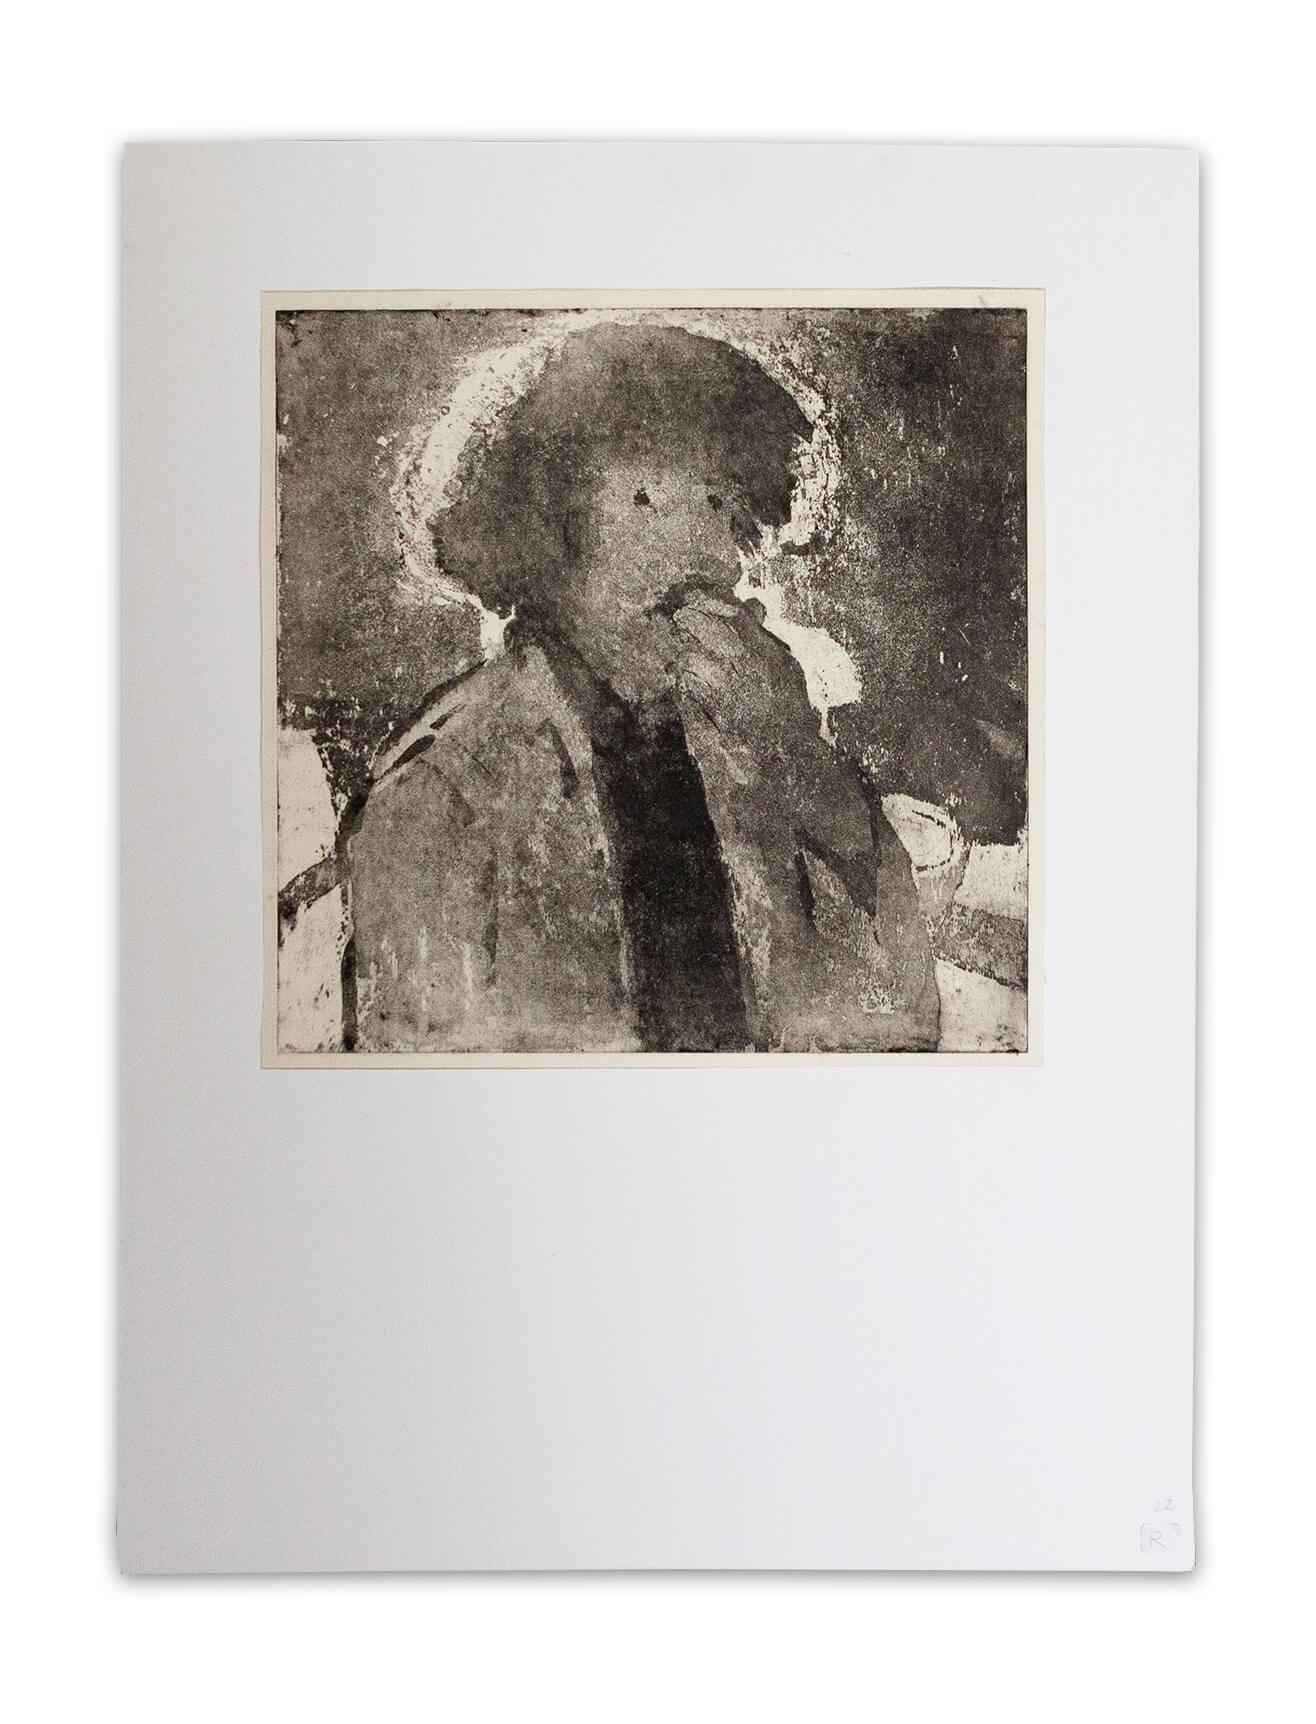 Zelfportret roken - 1980 - 0.41m x 0.41m